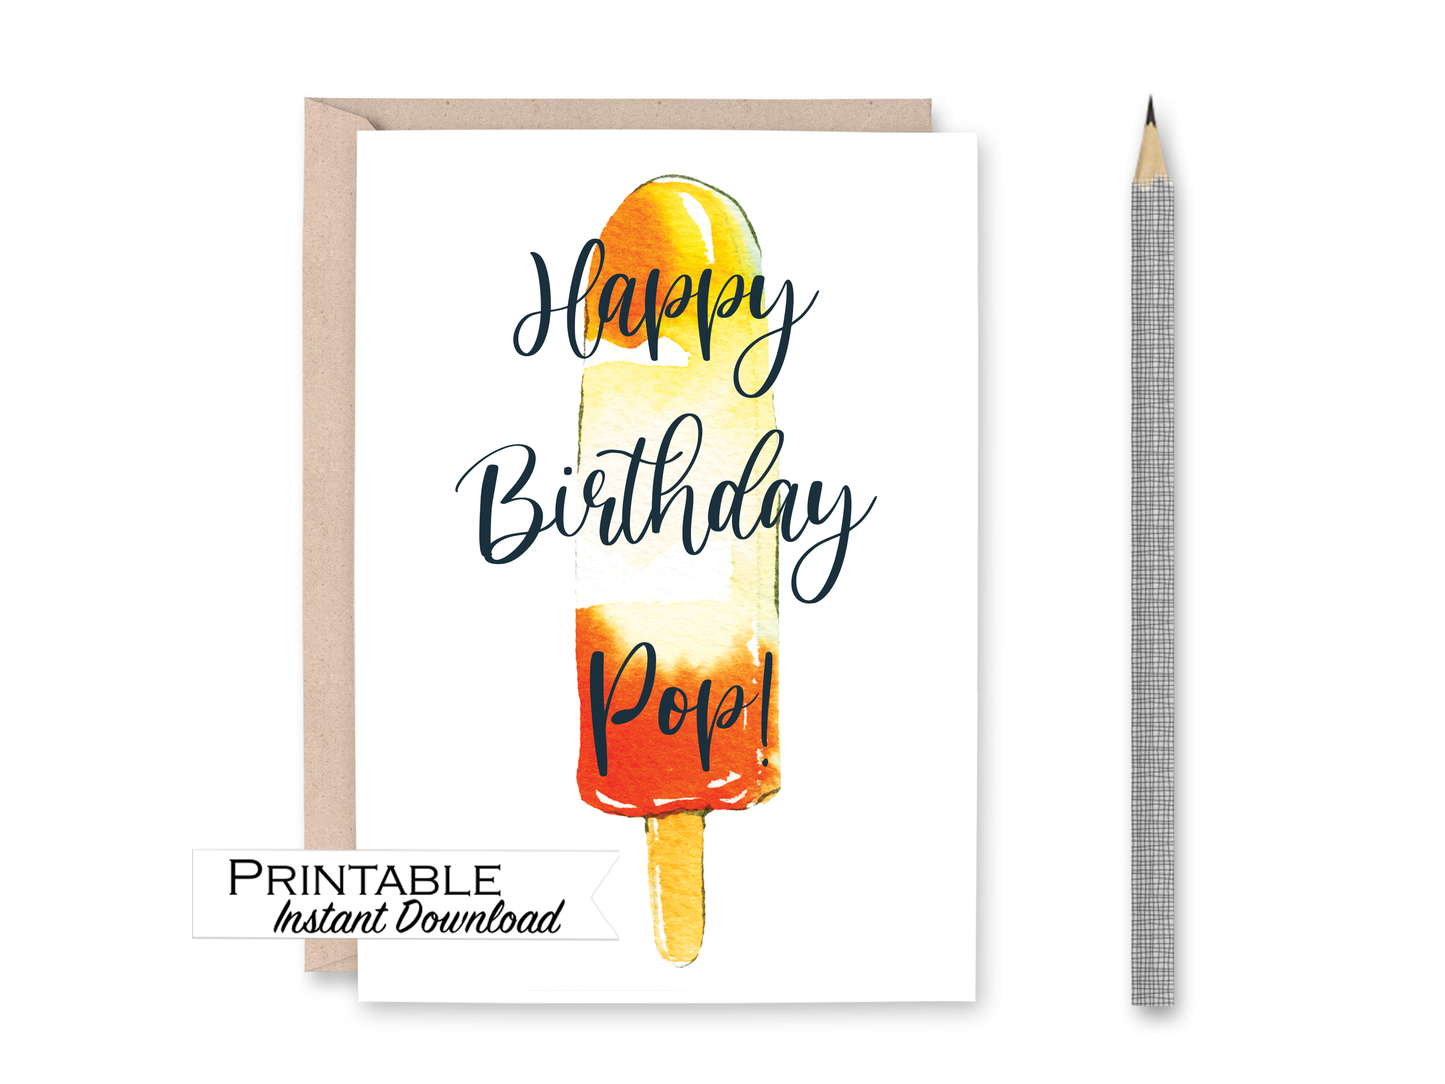 Happy Birthday Pop - Orange Popsicle Card Printable - Digital Download